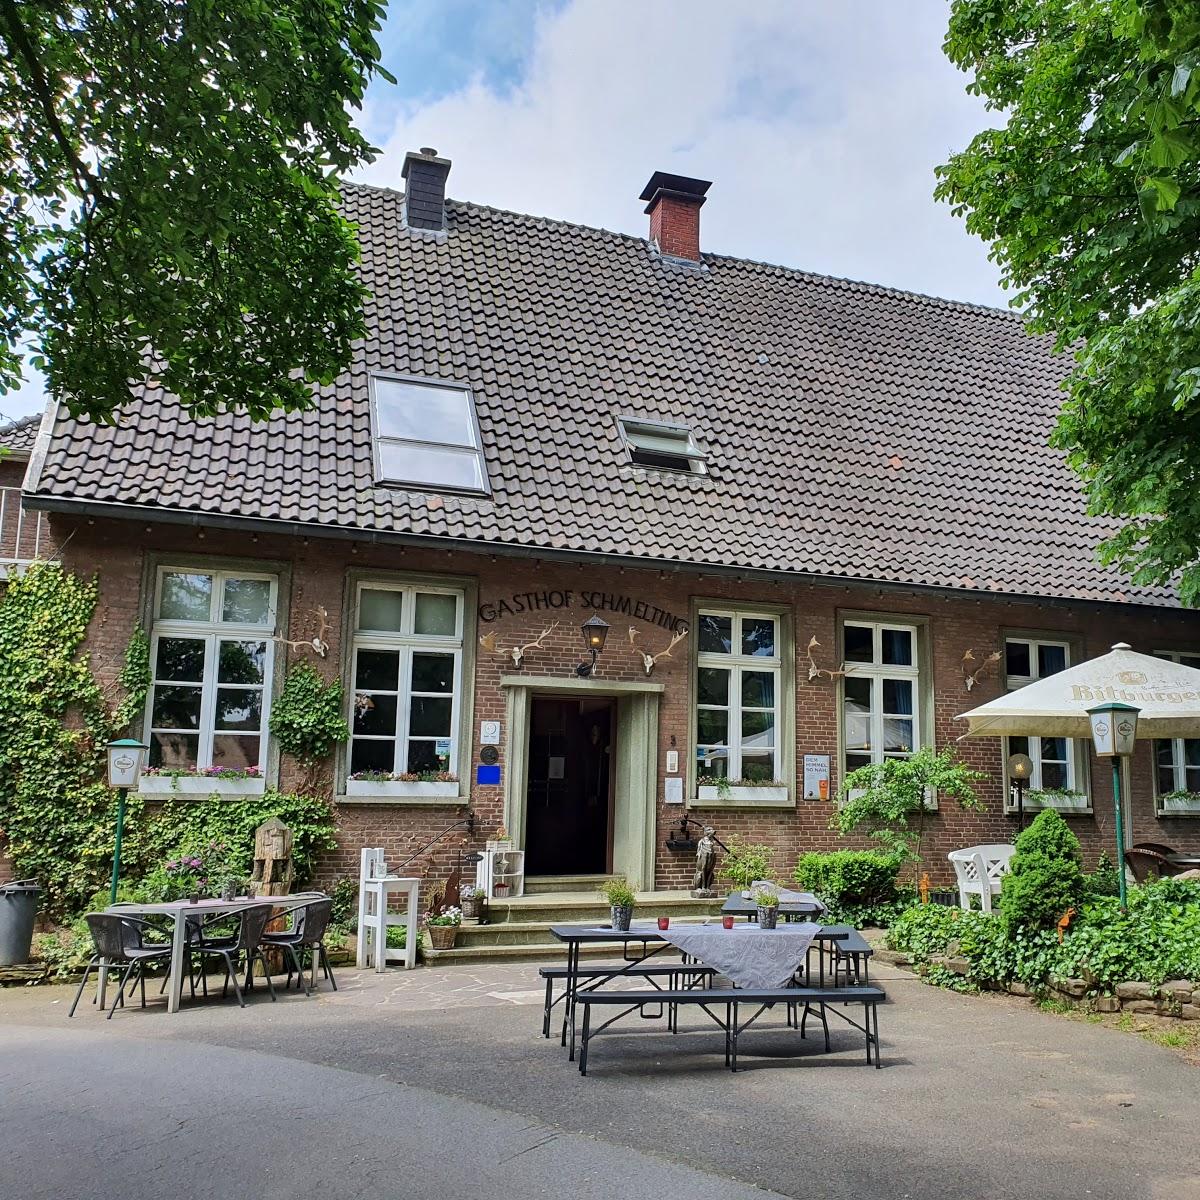 Restaurant "Georg Schmelting" in Reken